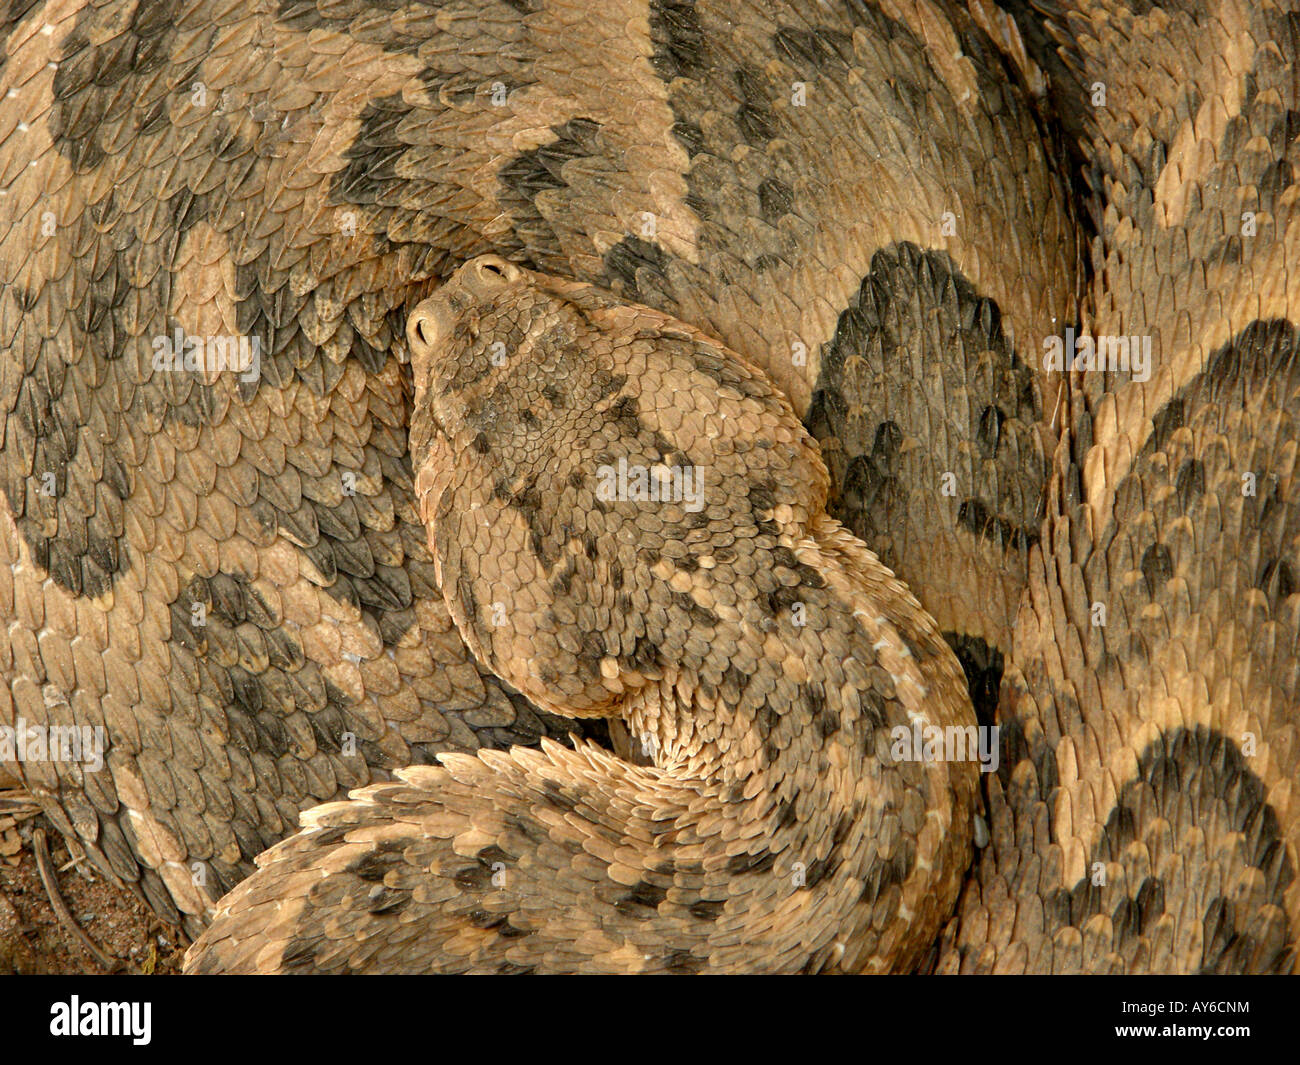 Schlafen puff Adder (Bitis arietans) mit Kopf auf gewundenen schuppigen Körper bildet ein interessantes Muster Stockfoto